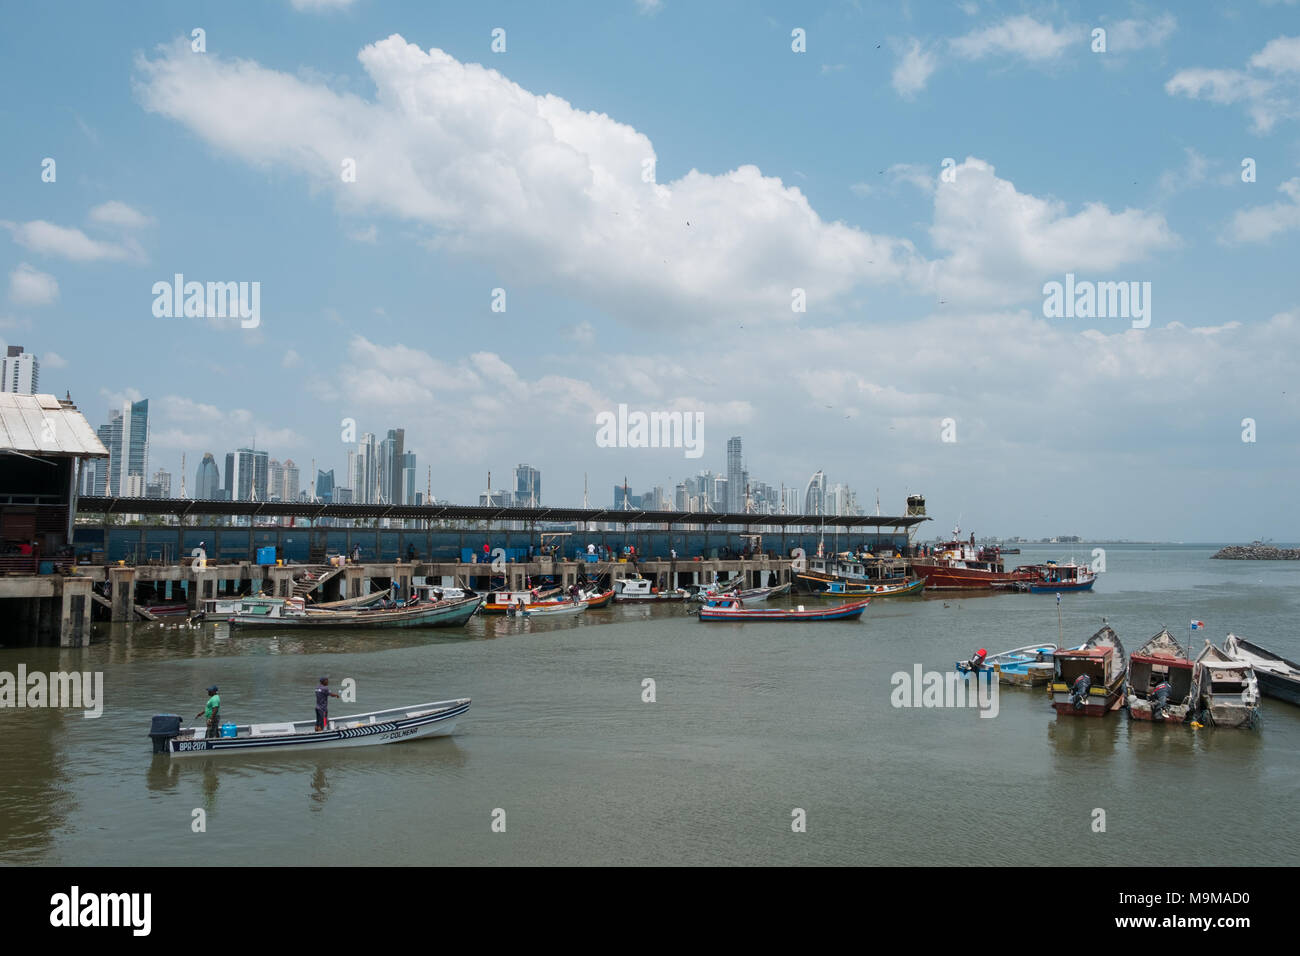 Panama City, Panama - März 2018: Fischer und Boote auf dem Fischmarkt/Hafen und City Skyline, Panama City. Stockfoto